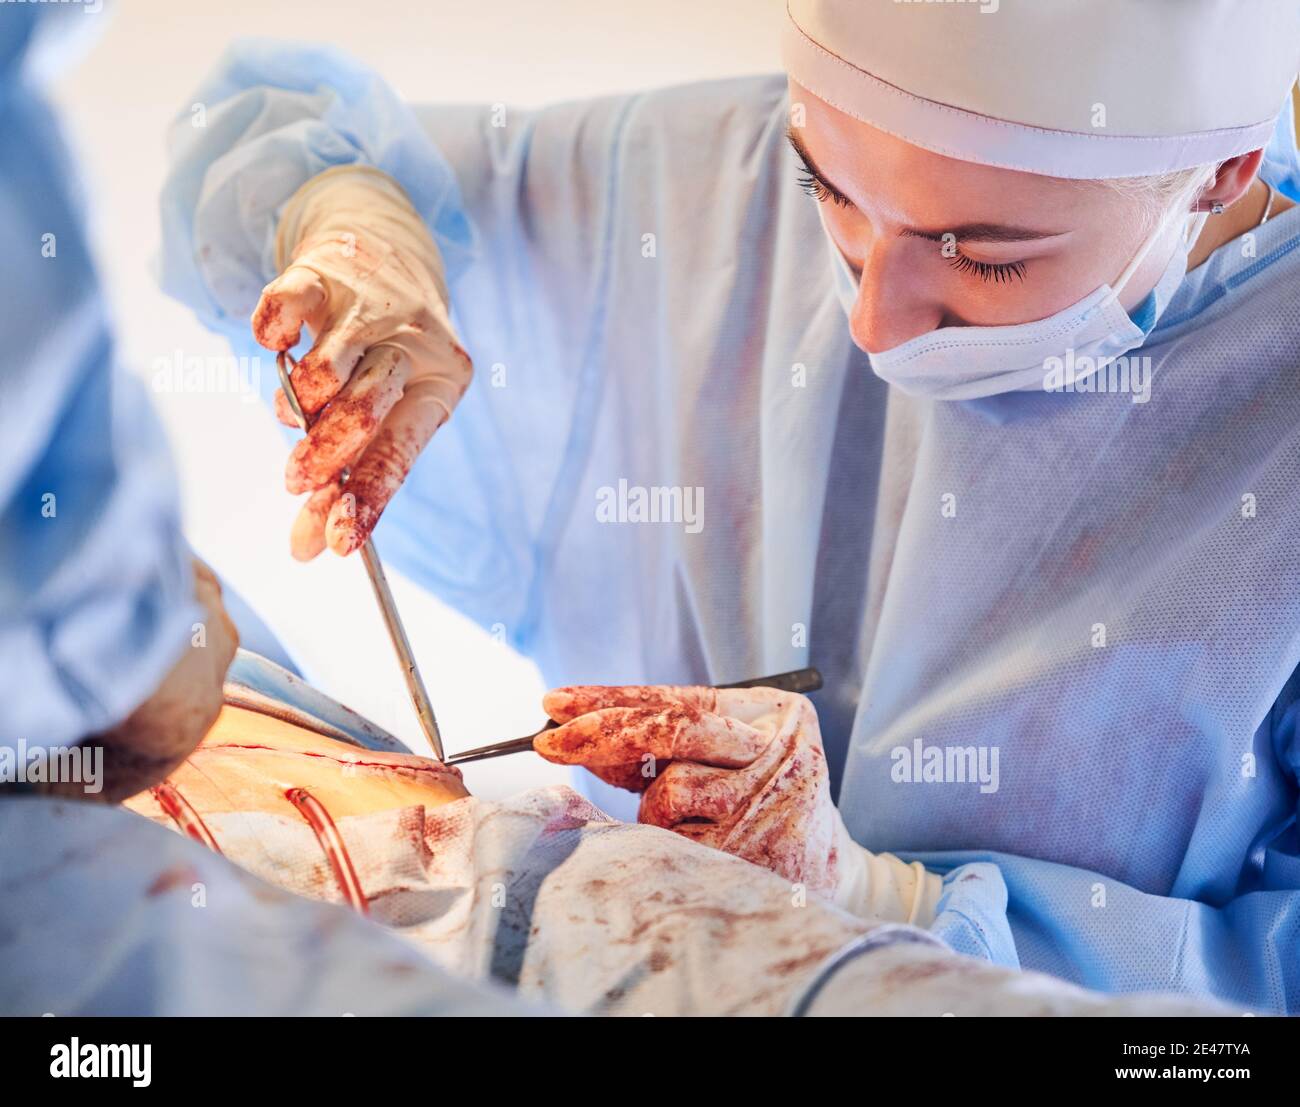 Gros plan de la jeune femme chirurgien dans des gants stériles en plaçant des sutures après la chirurgie tummy tummy. Femme médecin portant un uniforme chirurgical bleu et un masque médical lors de la chirurgie abdominale en plastique. Banque D'Images